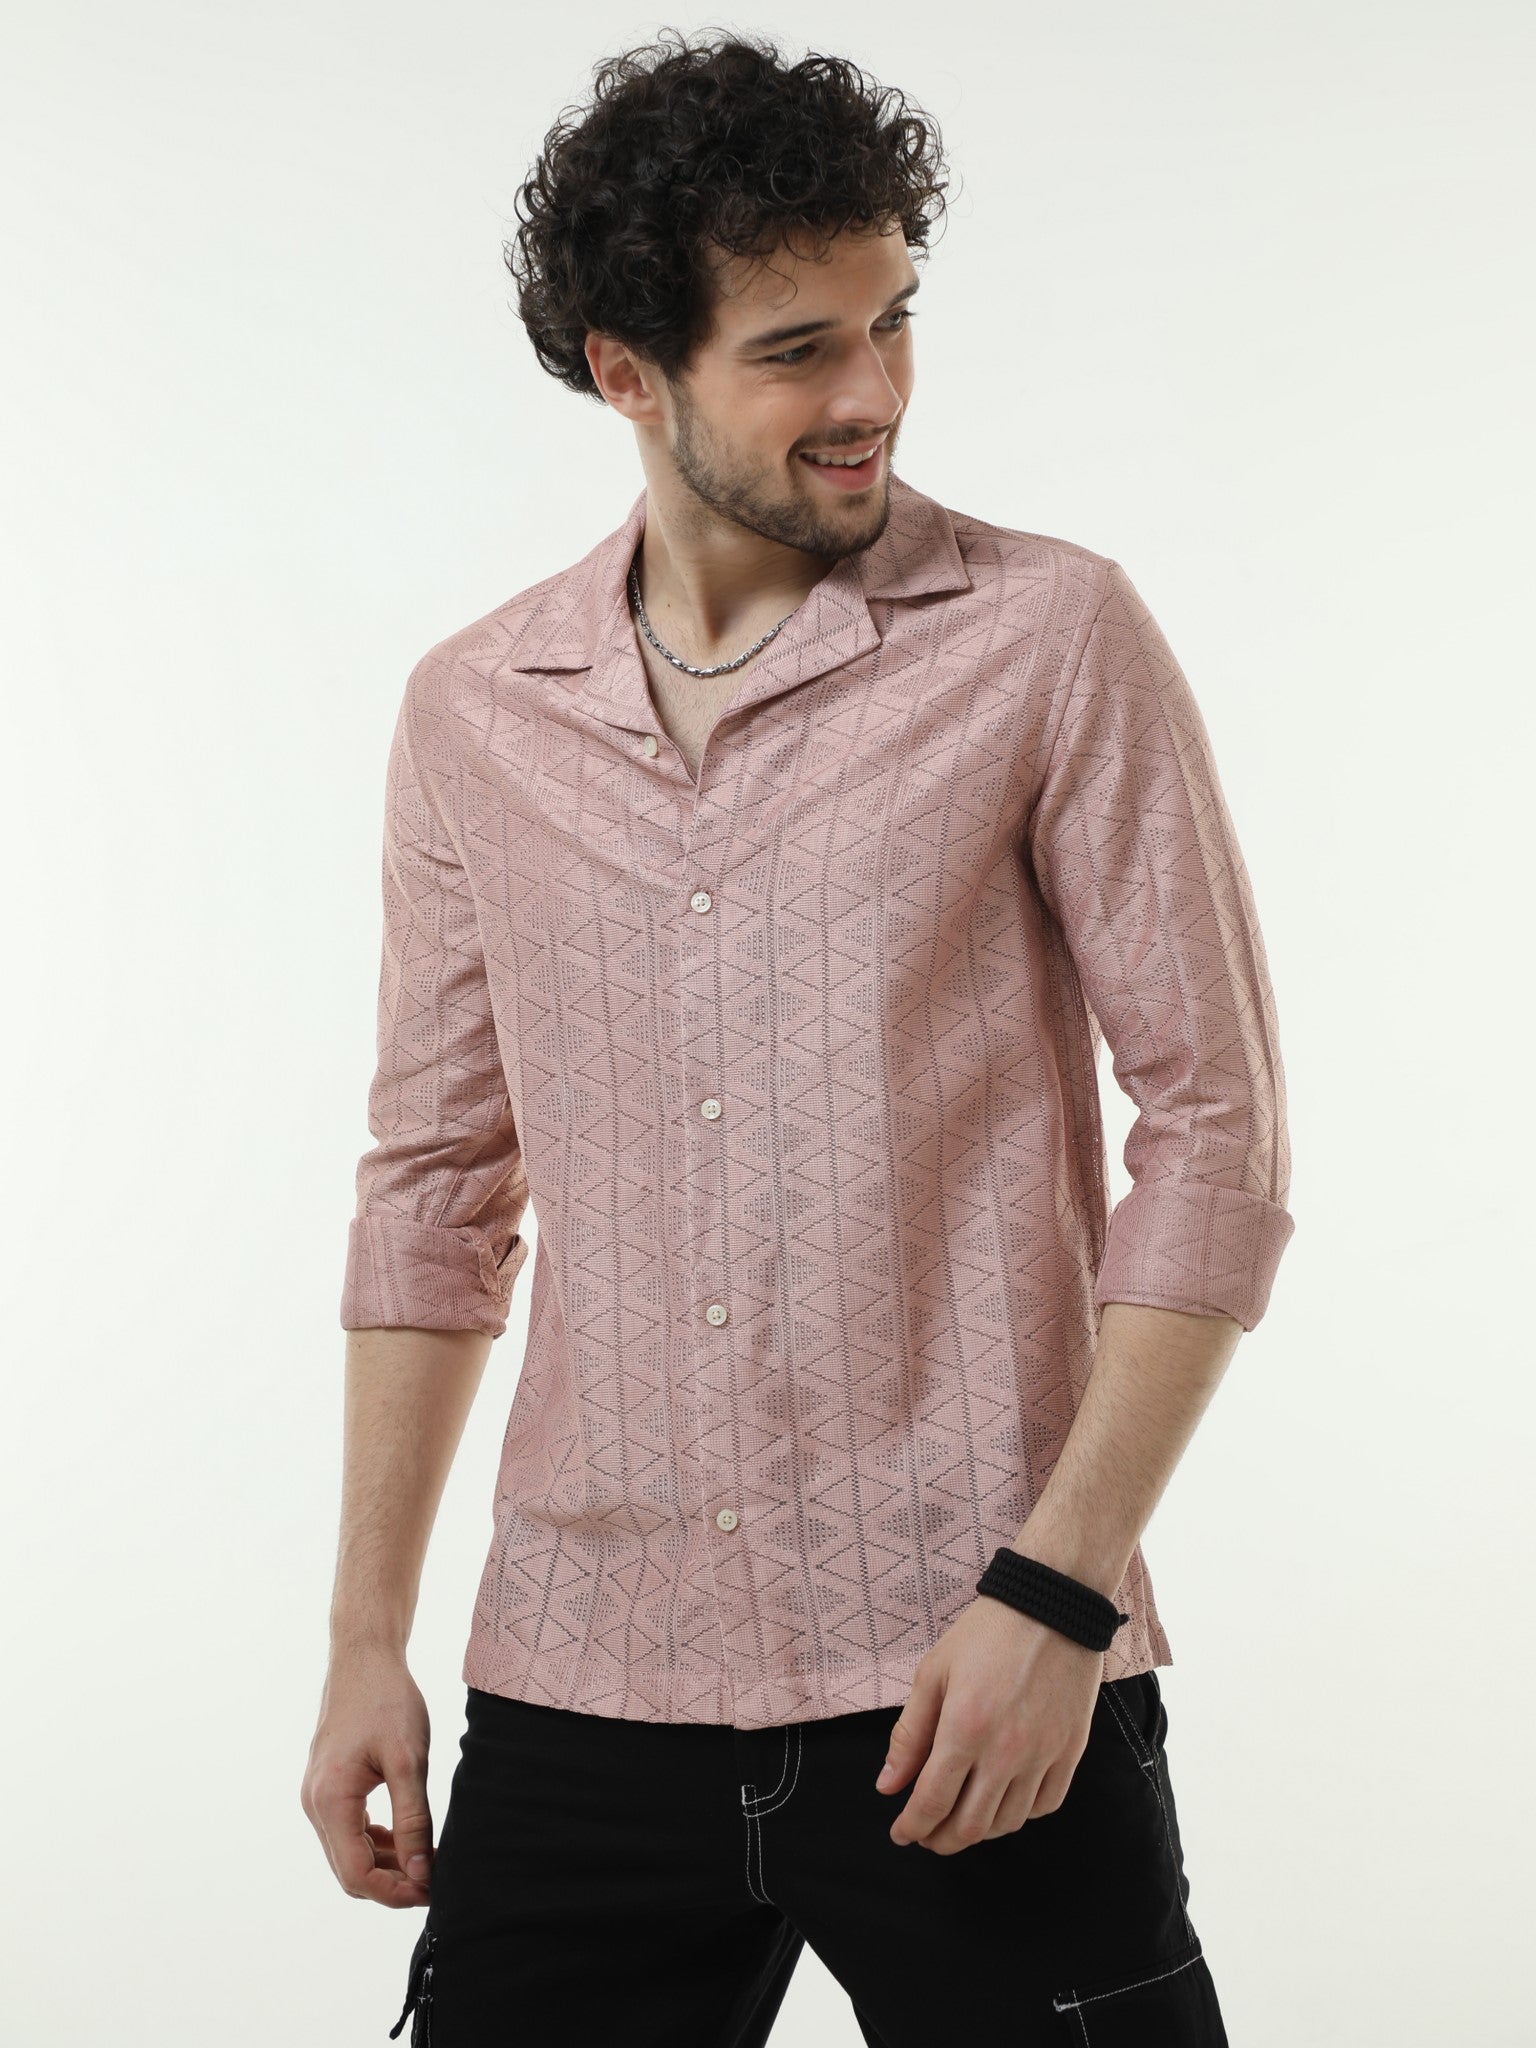 Textured Crochet Pink Shirt for Men